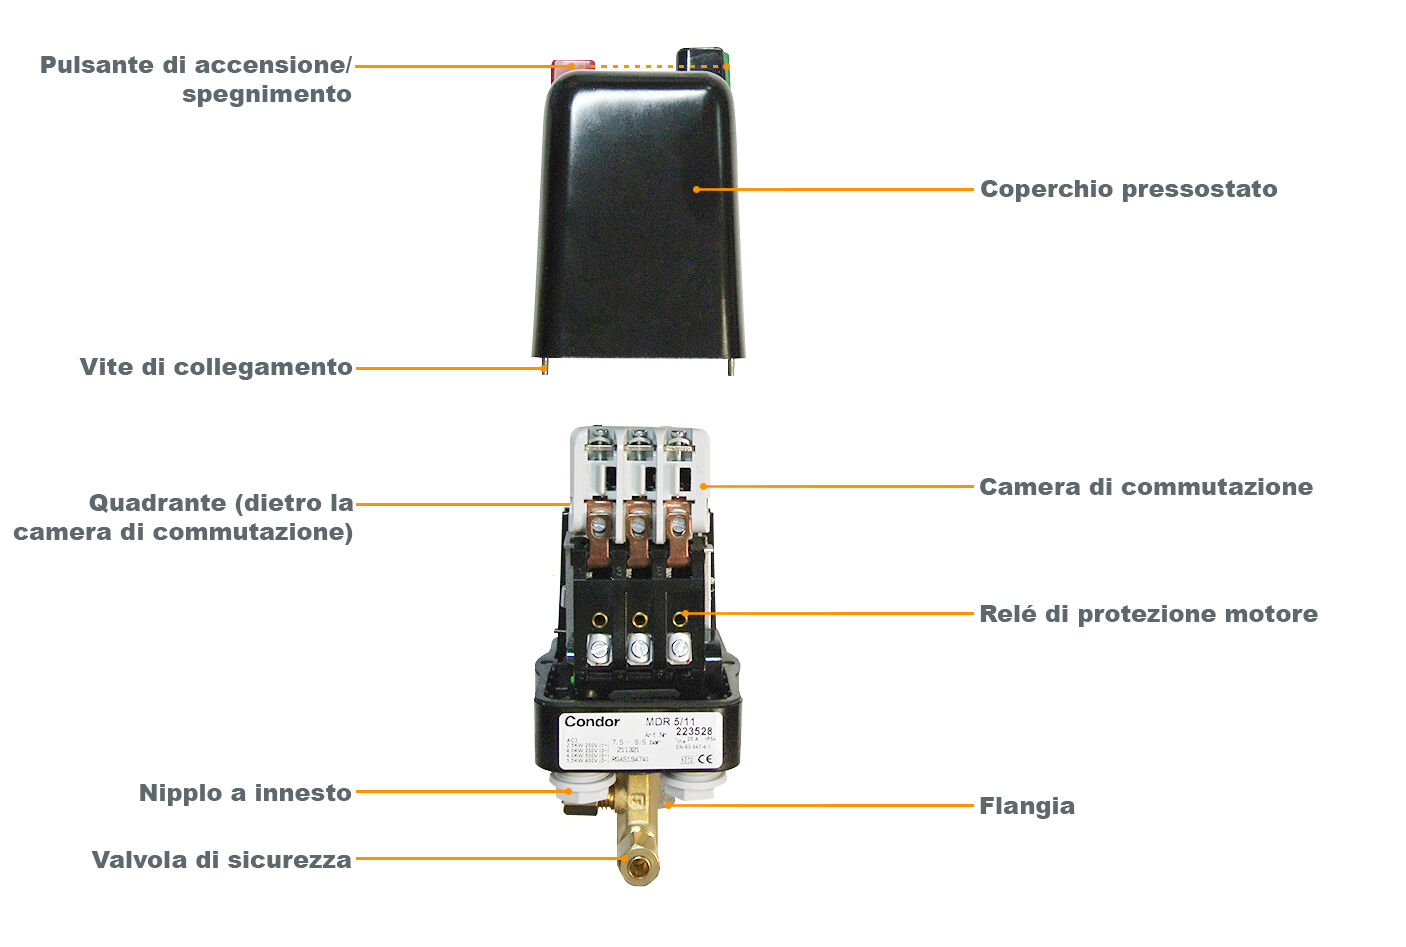 Accessori per compressori d'aria pressostato orizzontale verticale  pressostato aria interruttore automatico pompa aria regolatore compressore  d'aria - AliExpress